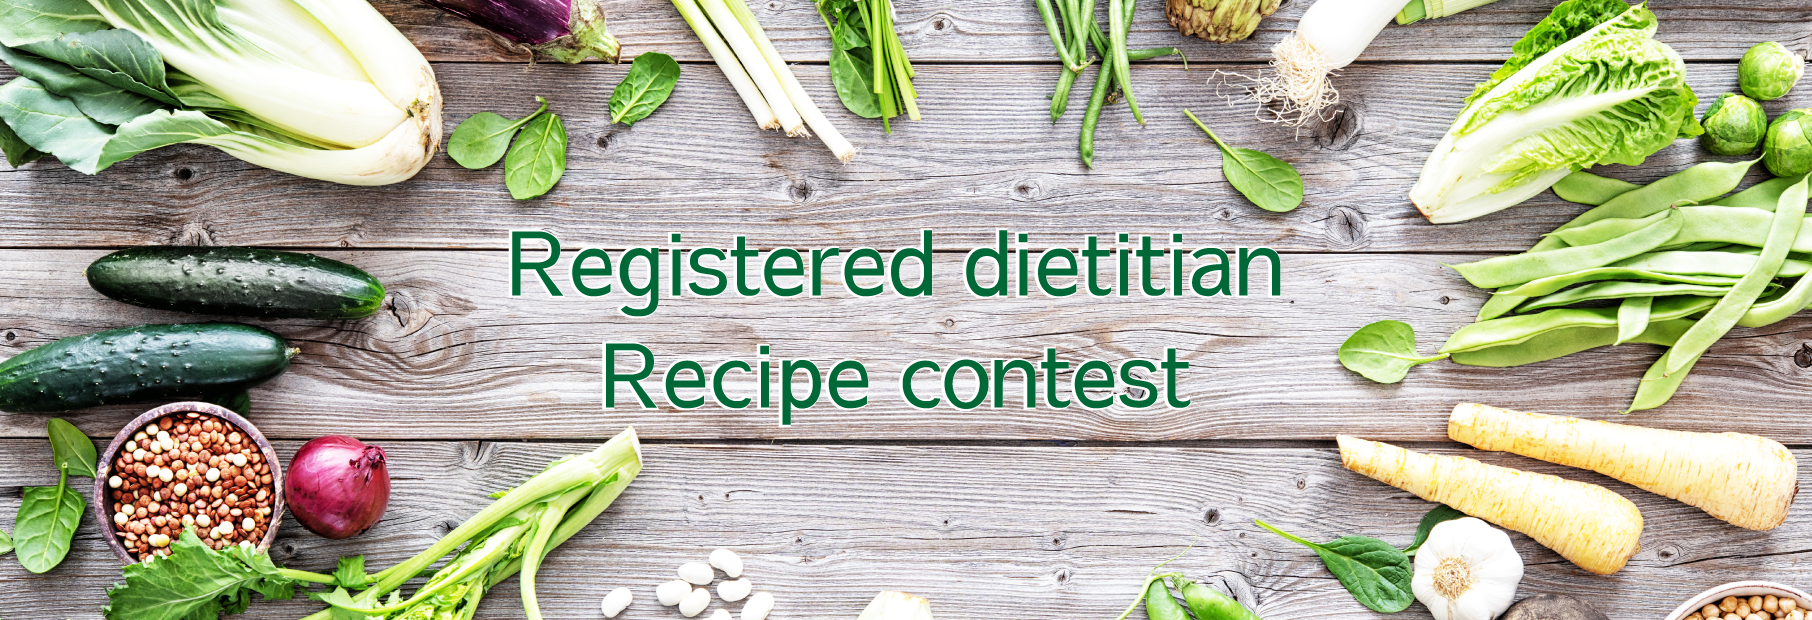 Registered dietitian recipe contest